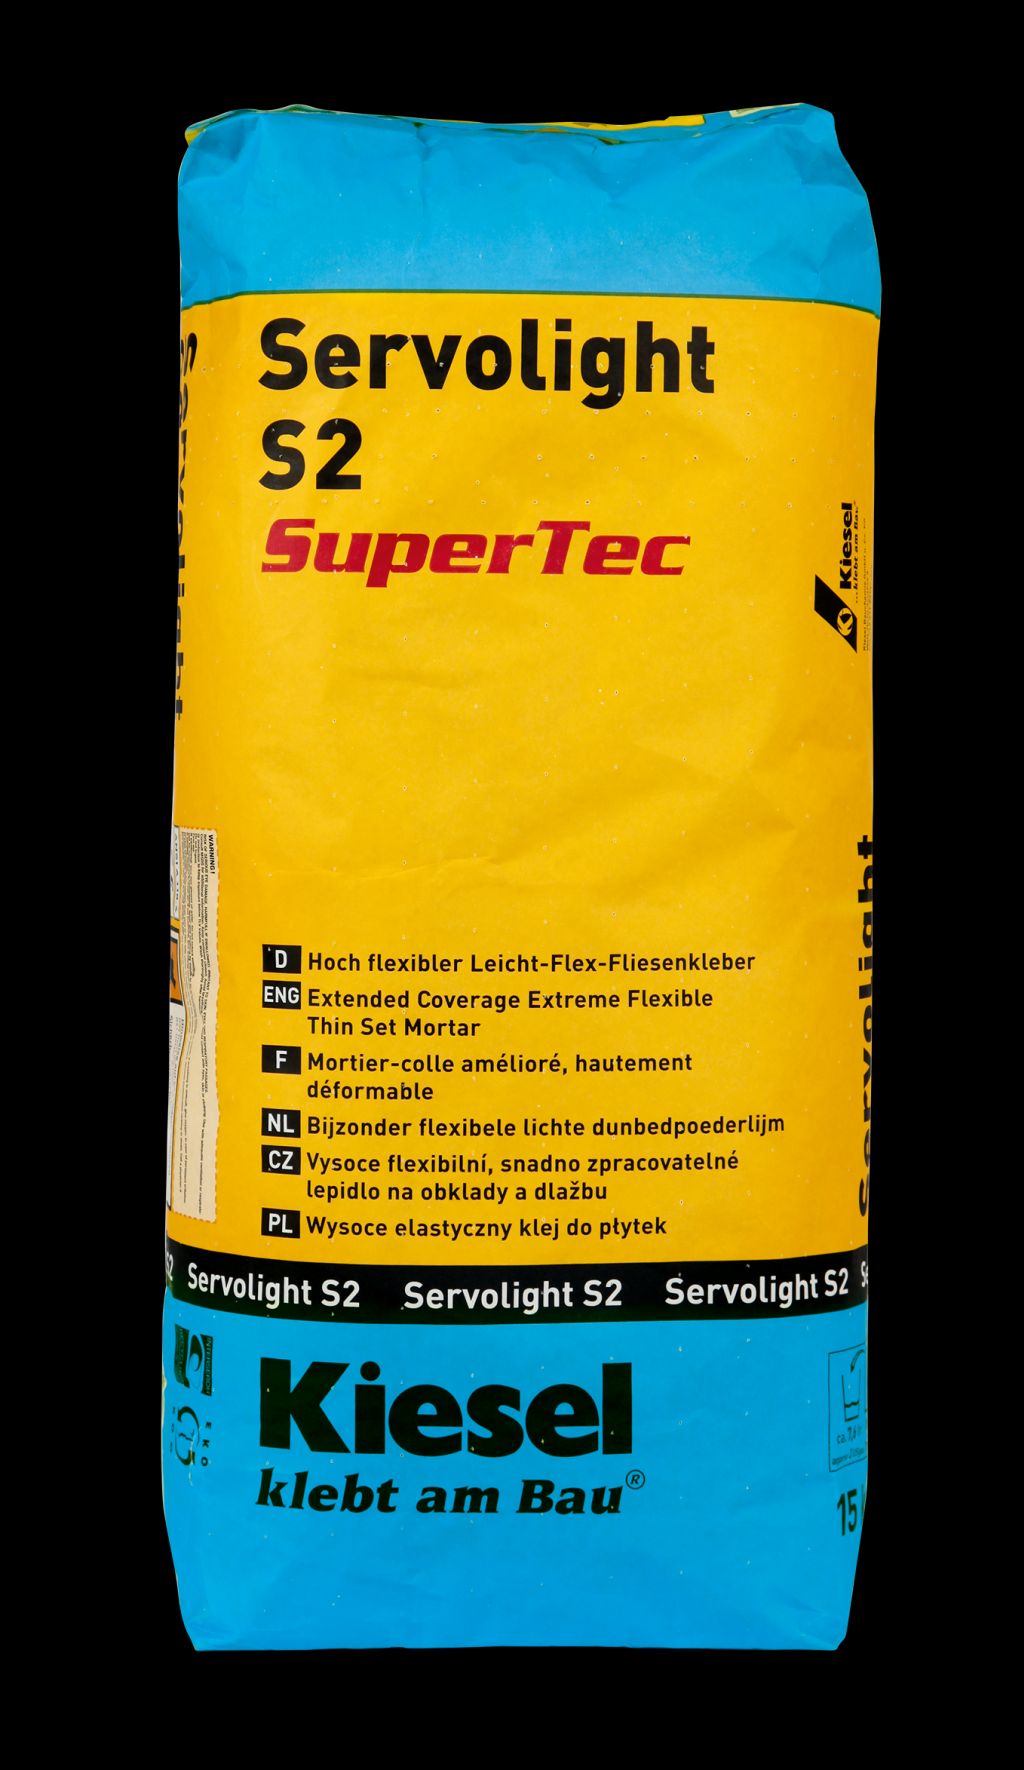 Flexkleber Servolight S2 Supertec 15 kg
Kiesel 13030